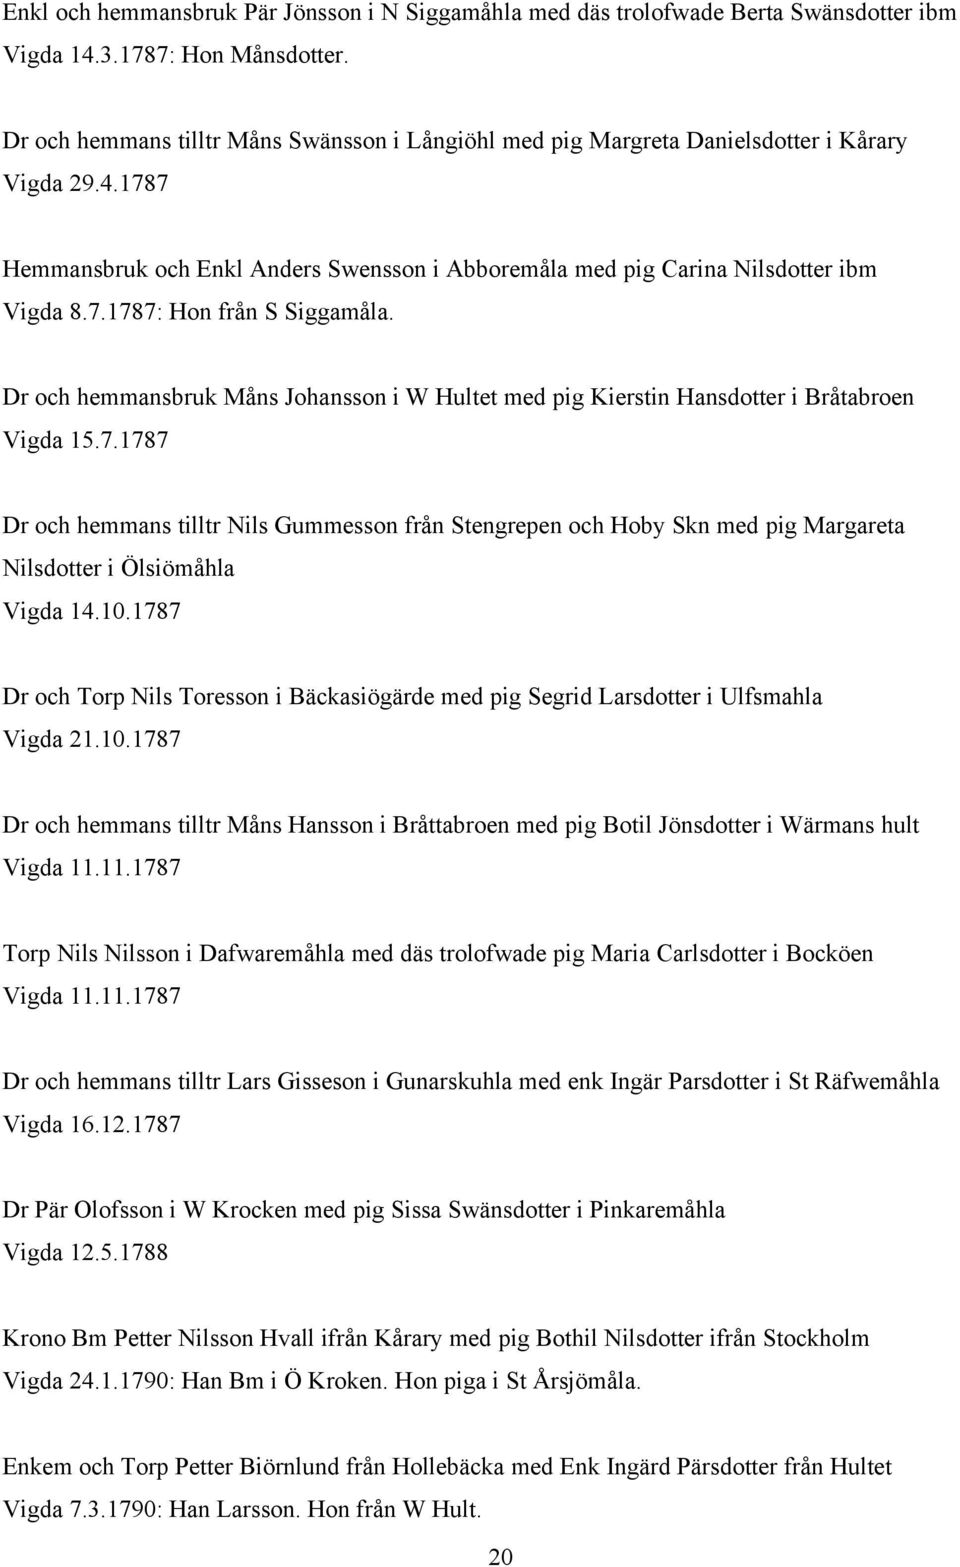 Dr och hemmansbruk Måns Johansson i W Hultet med pig Kierstin Hansdotter i Bråtabroen Vigda 15.7.